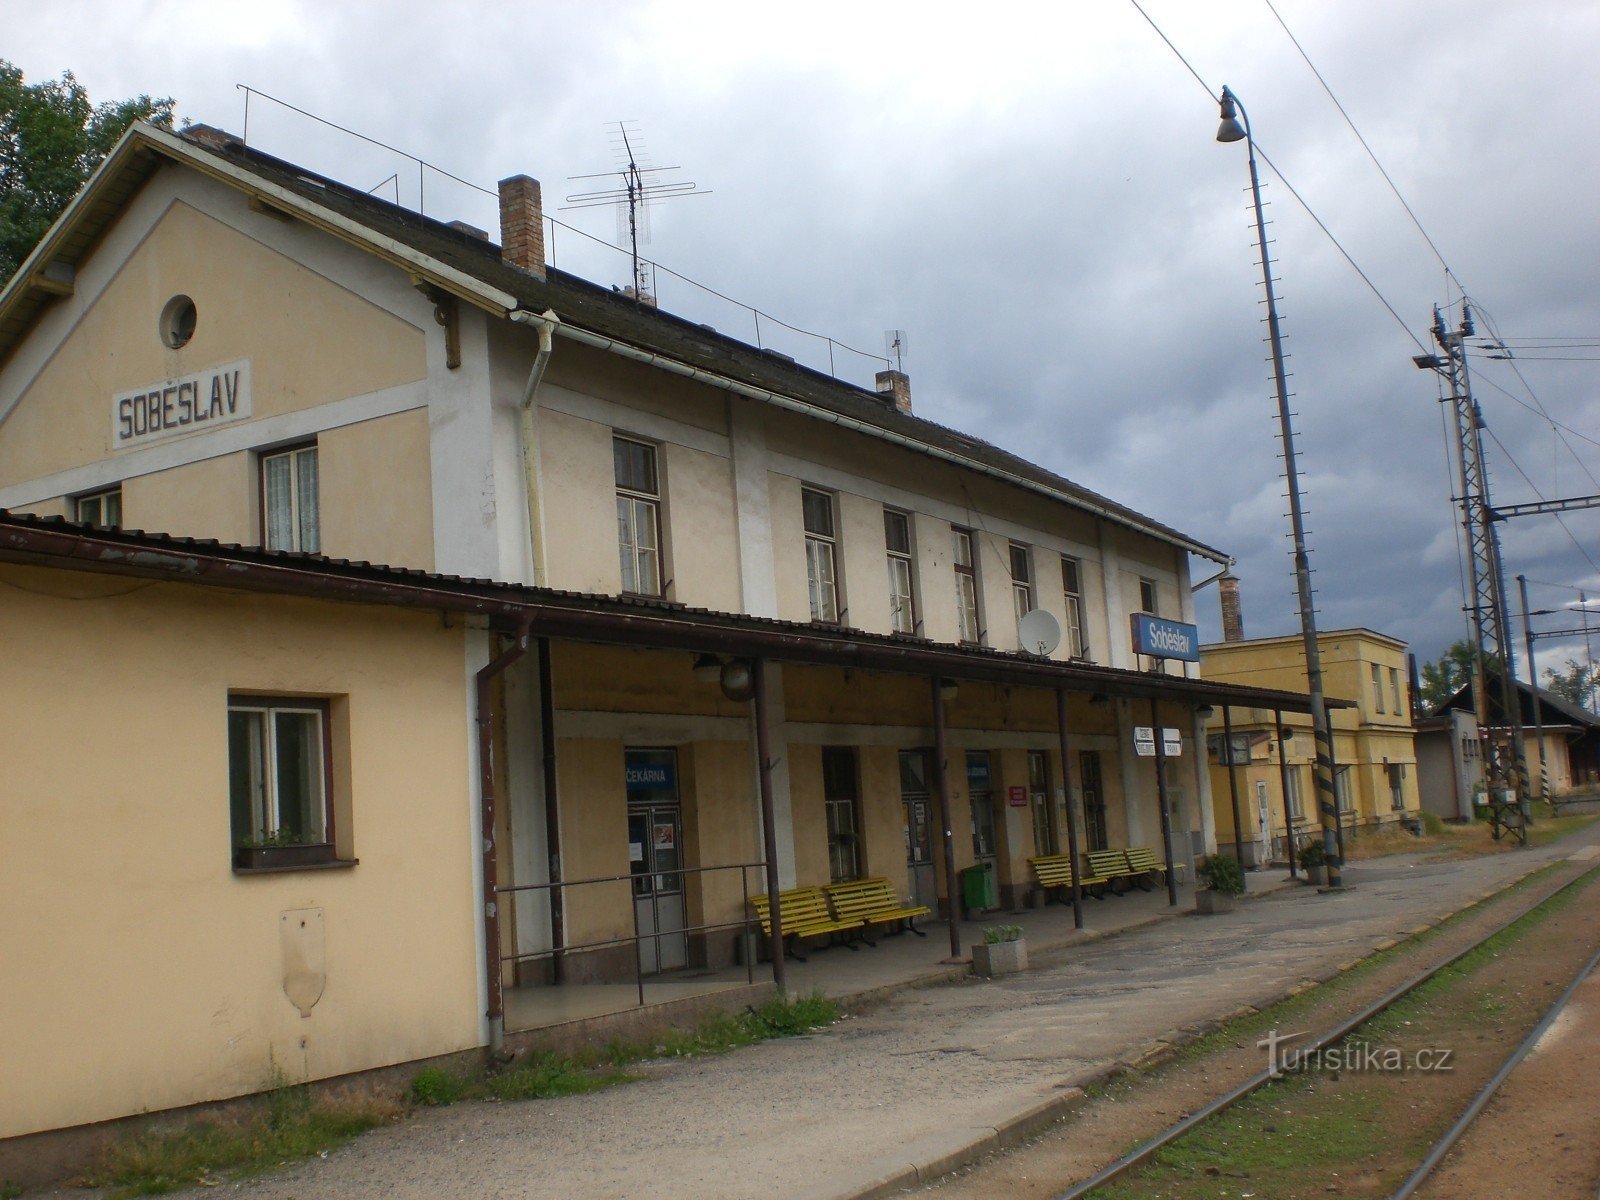 ソベスラフ - 鉄道駅